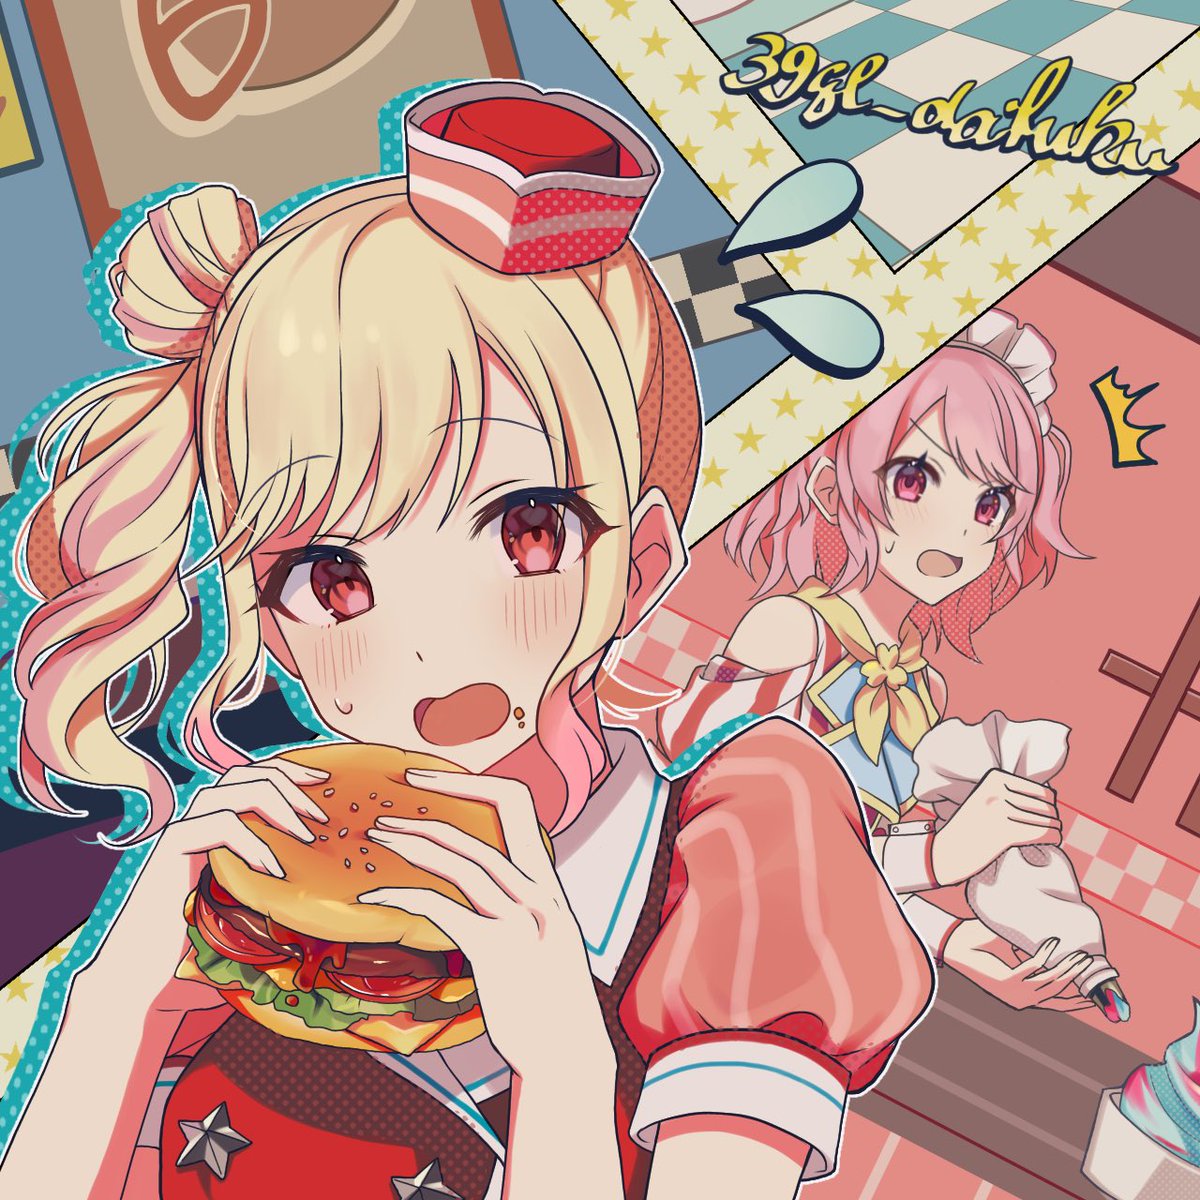 burger food multiple girls 2girls pink hair blonde hair pink eyes  illustration images